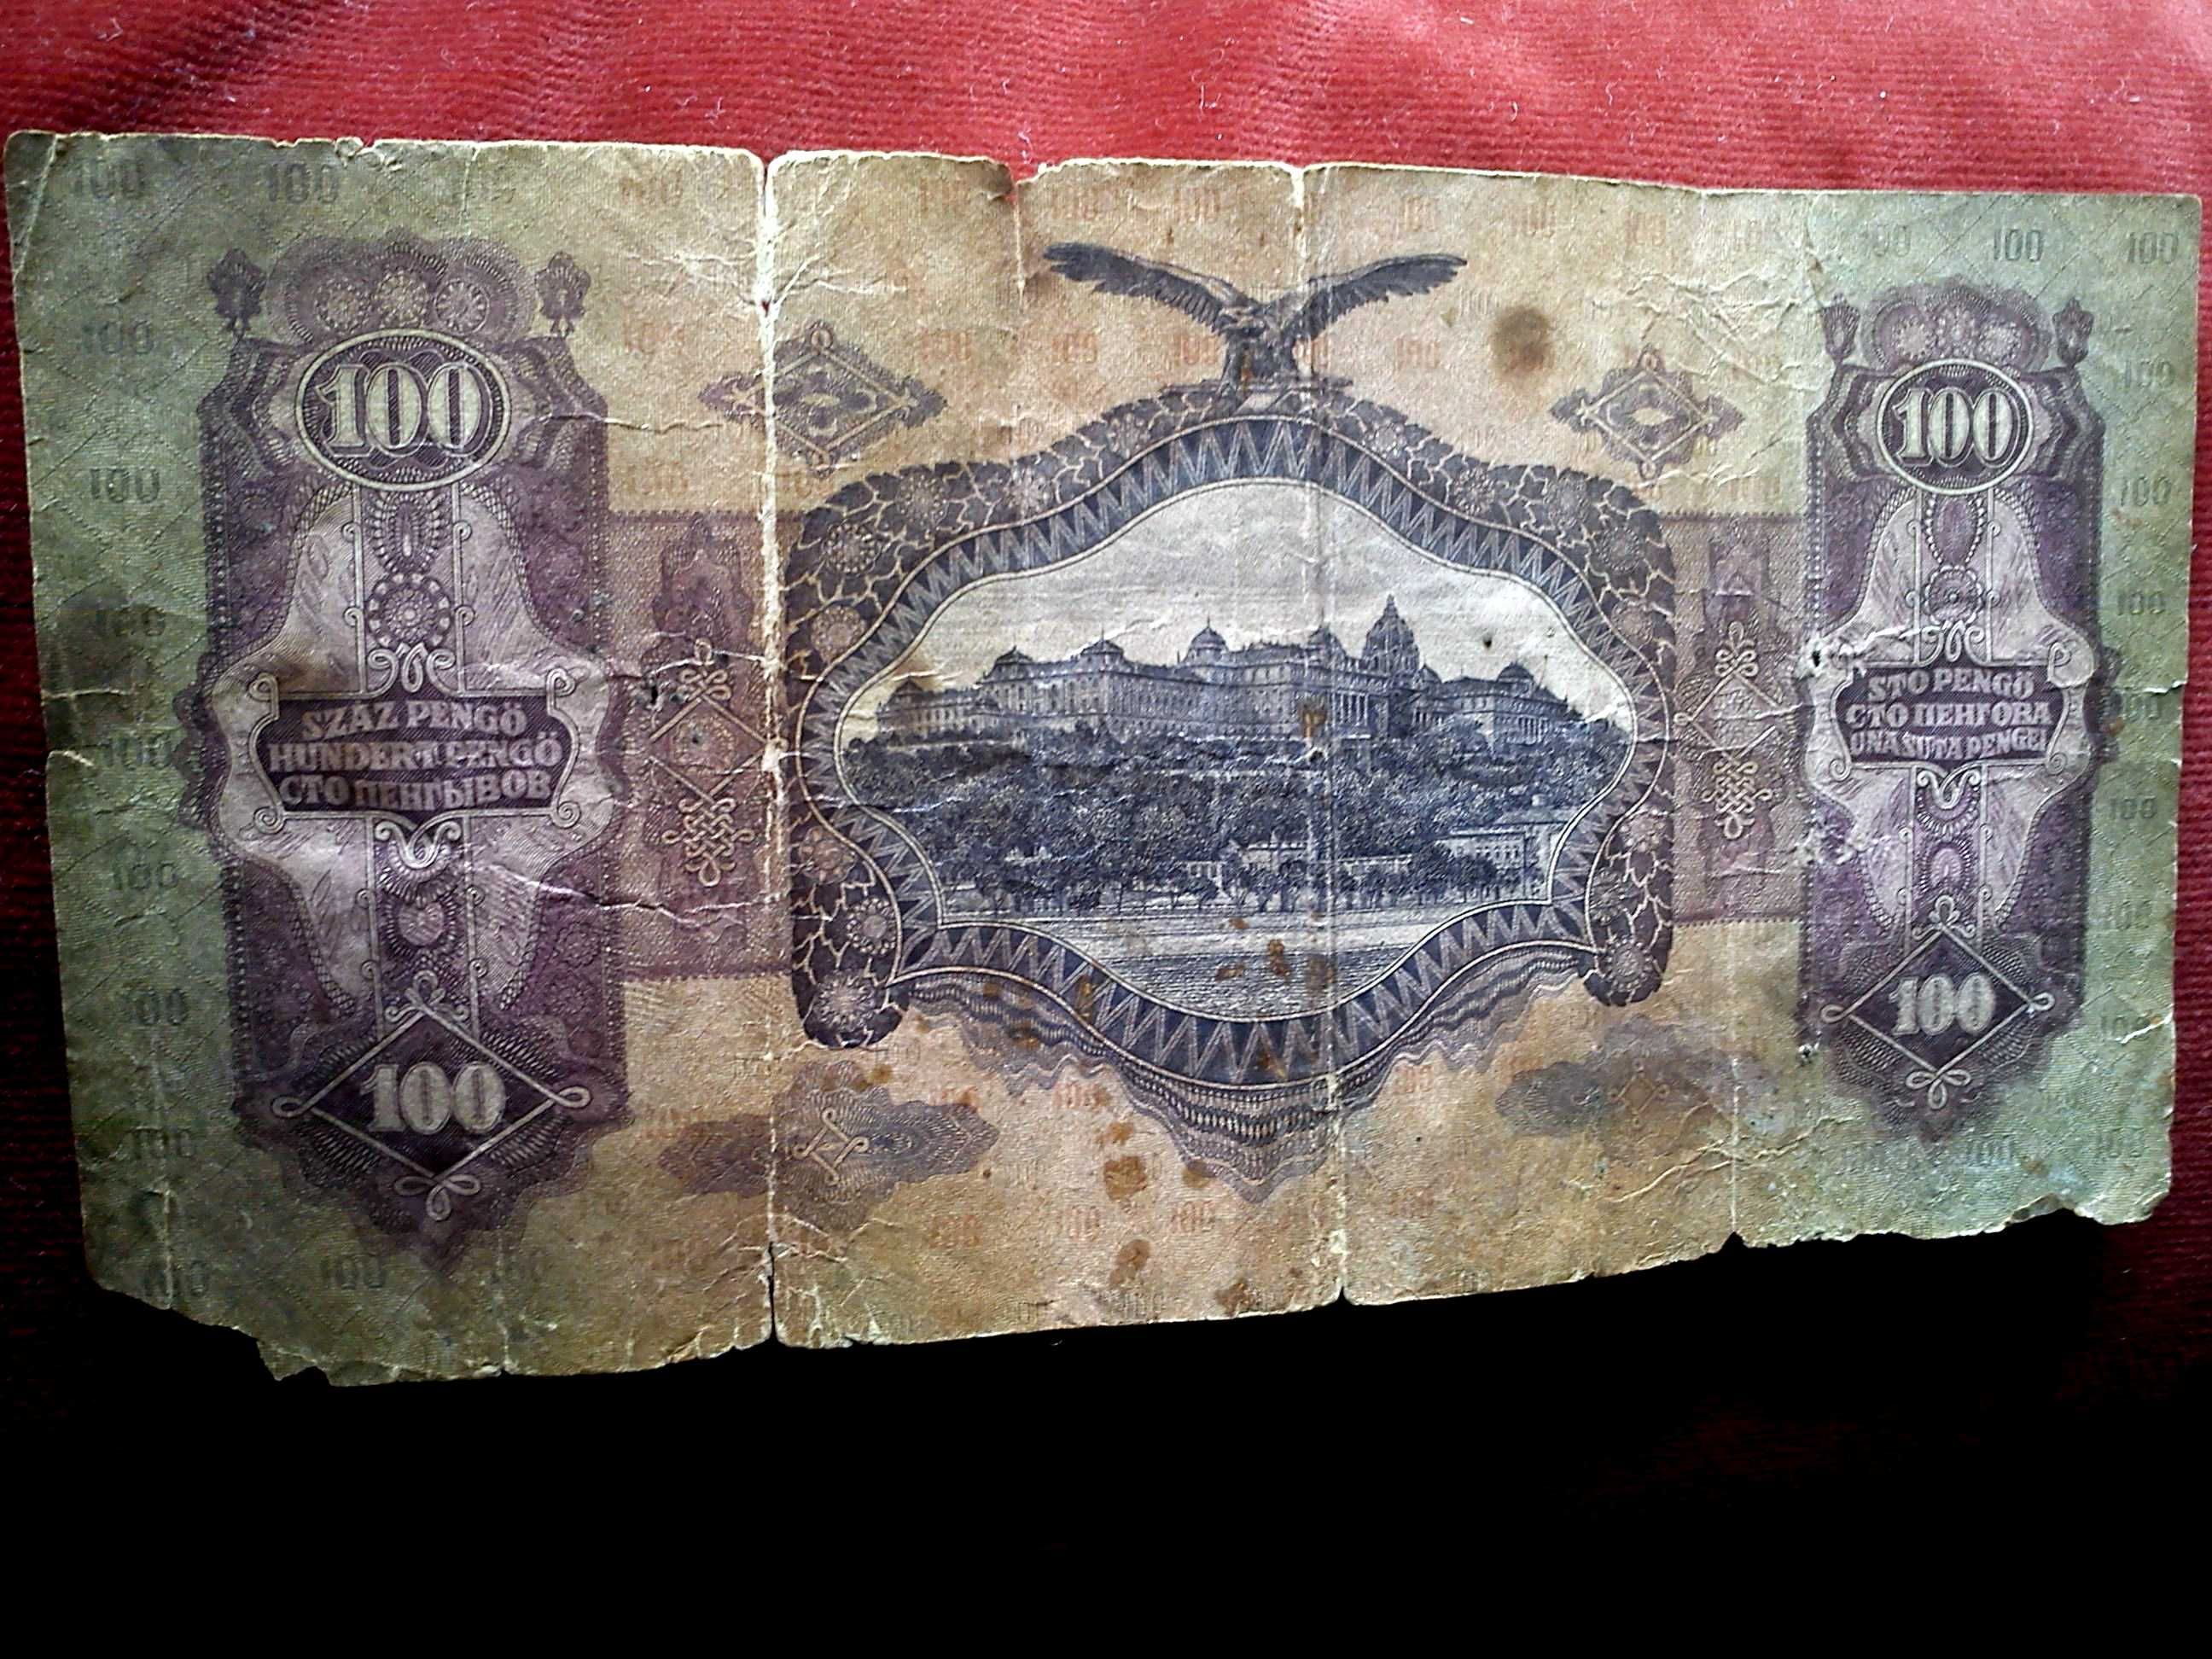 De vinzare bani de hirtie 100 pengo din 1930